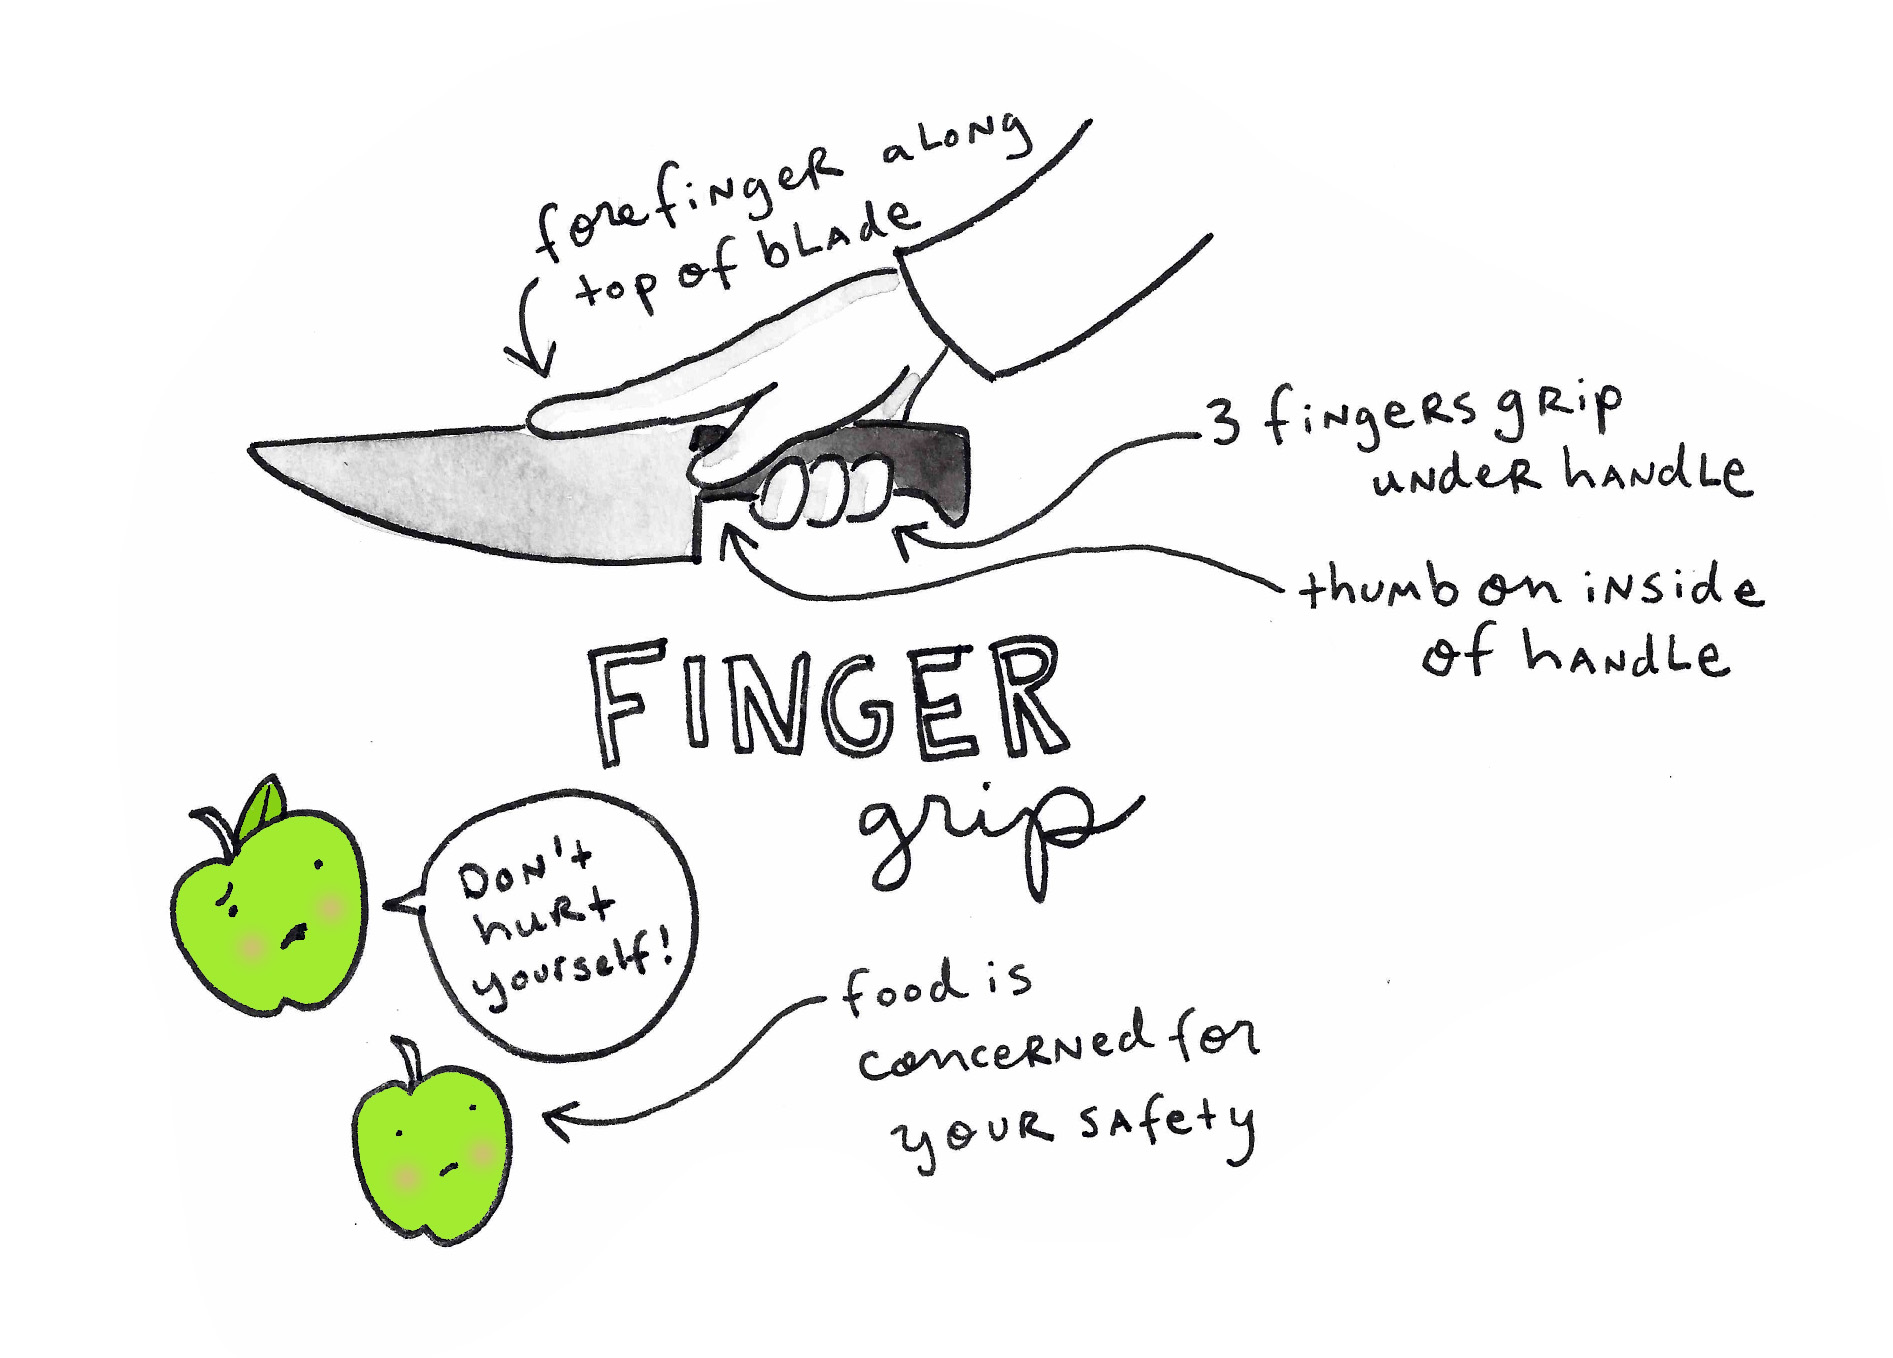 Finger knife grip